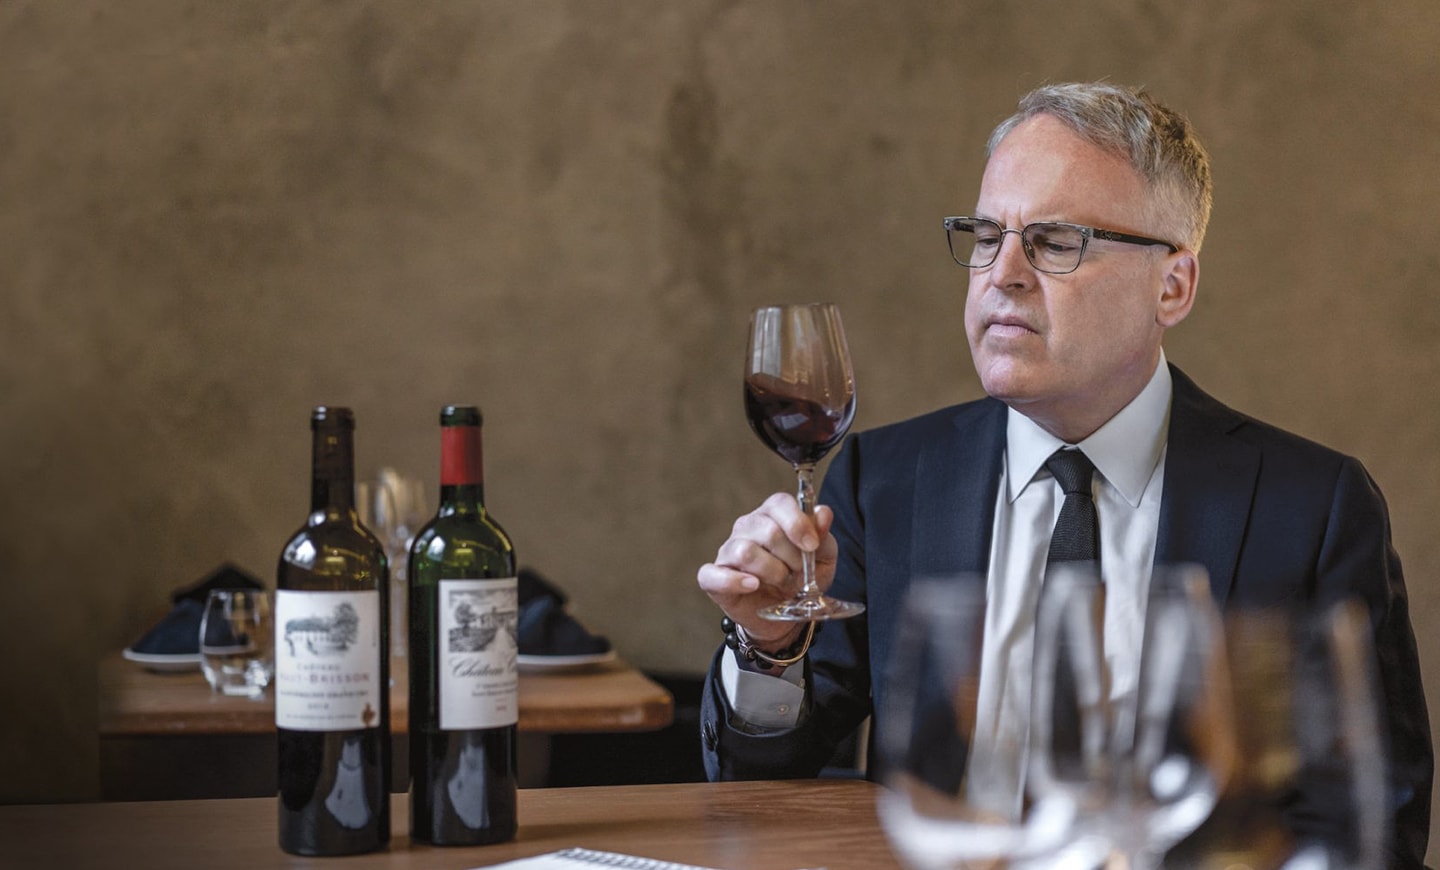 James Suckling hält ein Glas Wein, während vor ihm zwei Weinflaschen auf dem Tisch stehen.